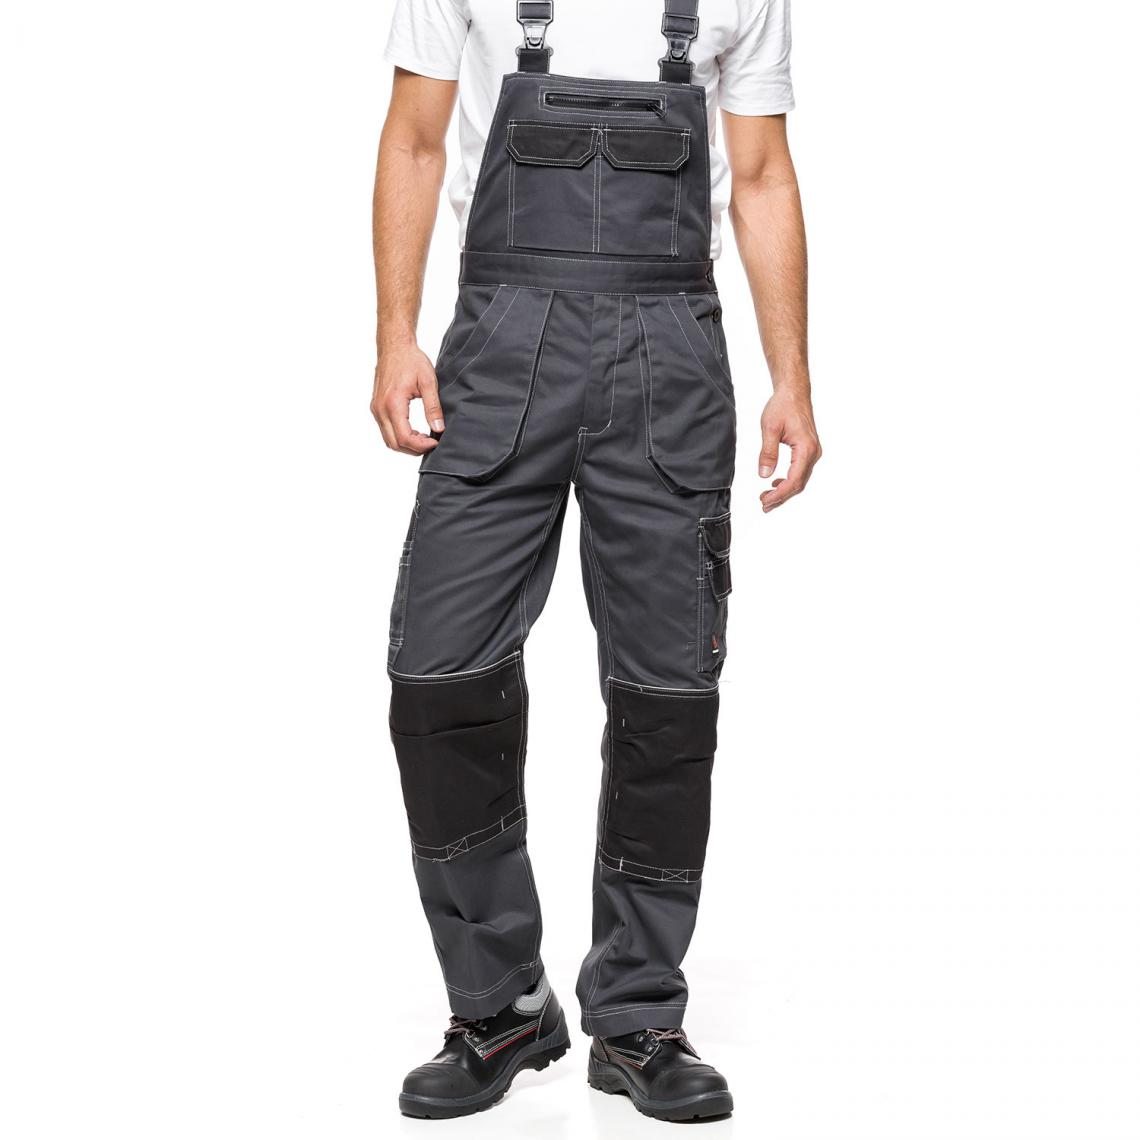 Sans Marque - Salopette de travail pantalon HELIOS Gris et noir Taille 48 (86-90) - Protections corps